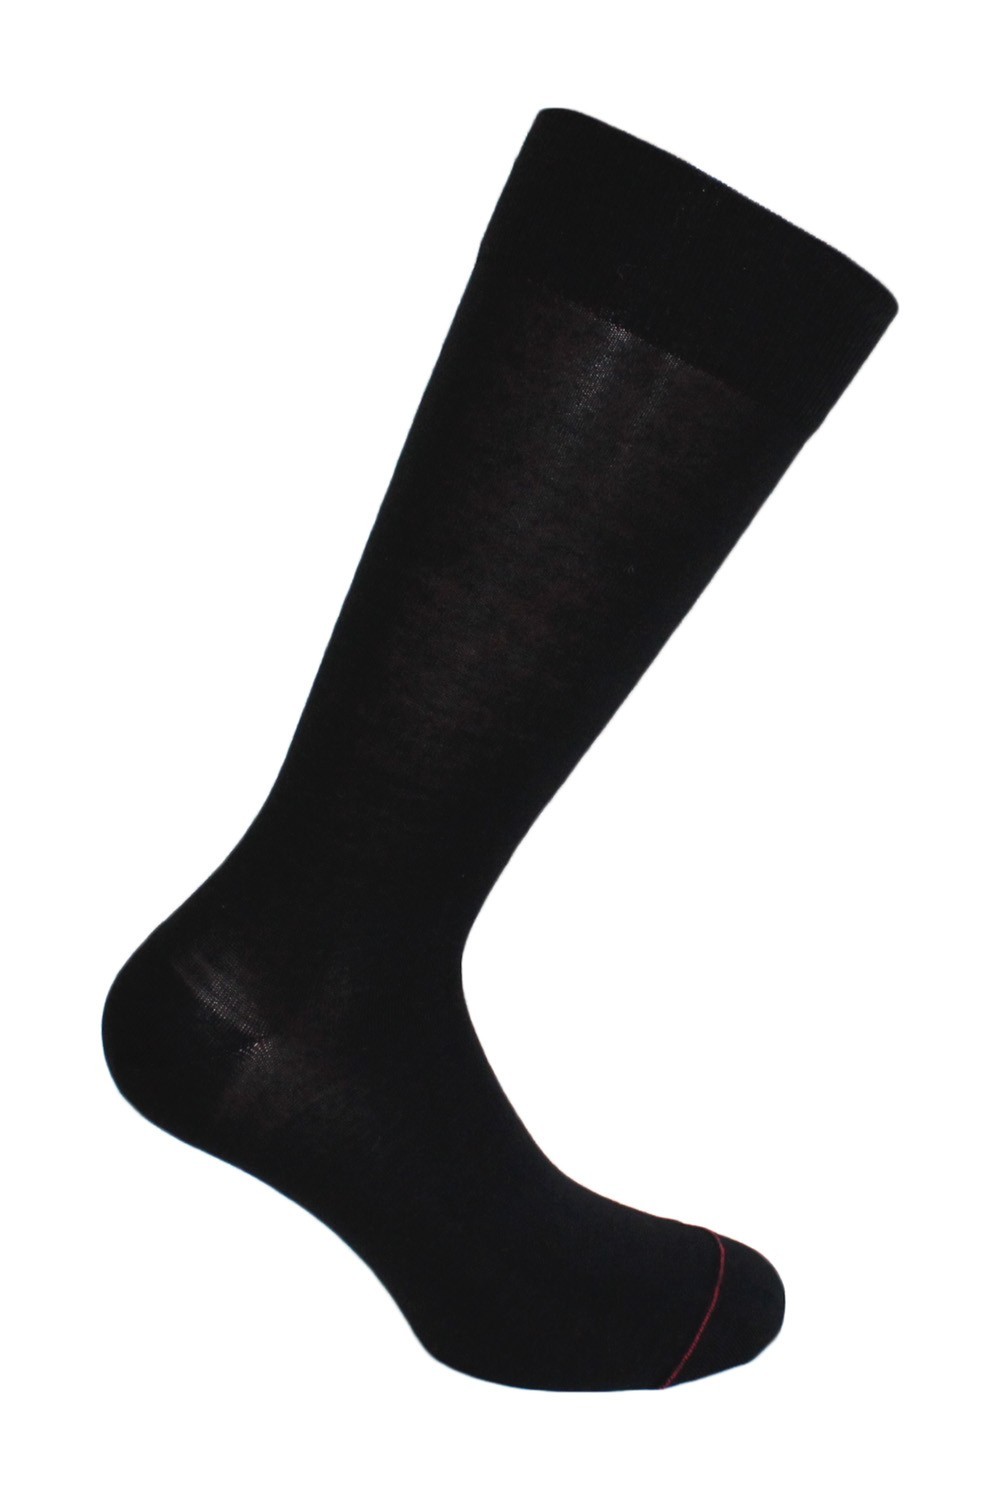 uni.- 							 							show original title black Details about   Labonal sock wire from scotland double sole 